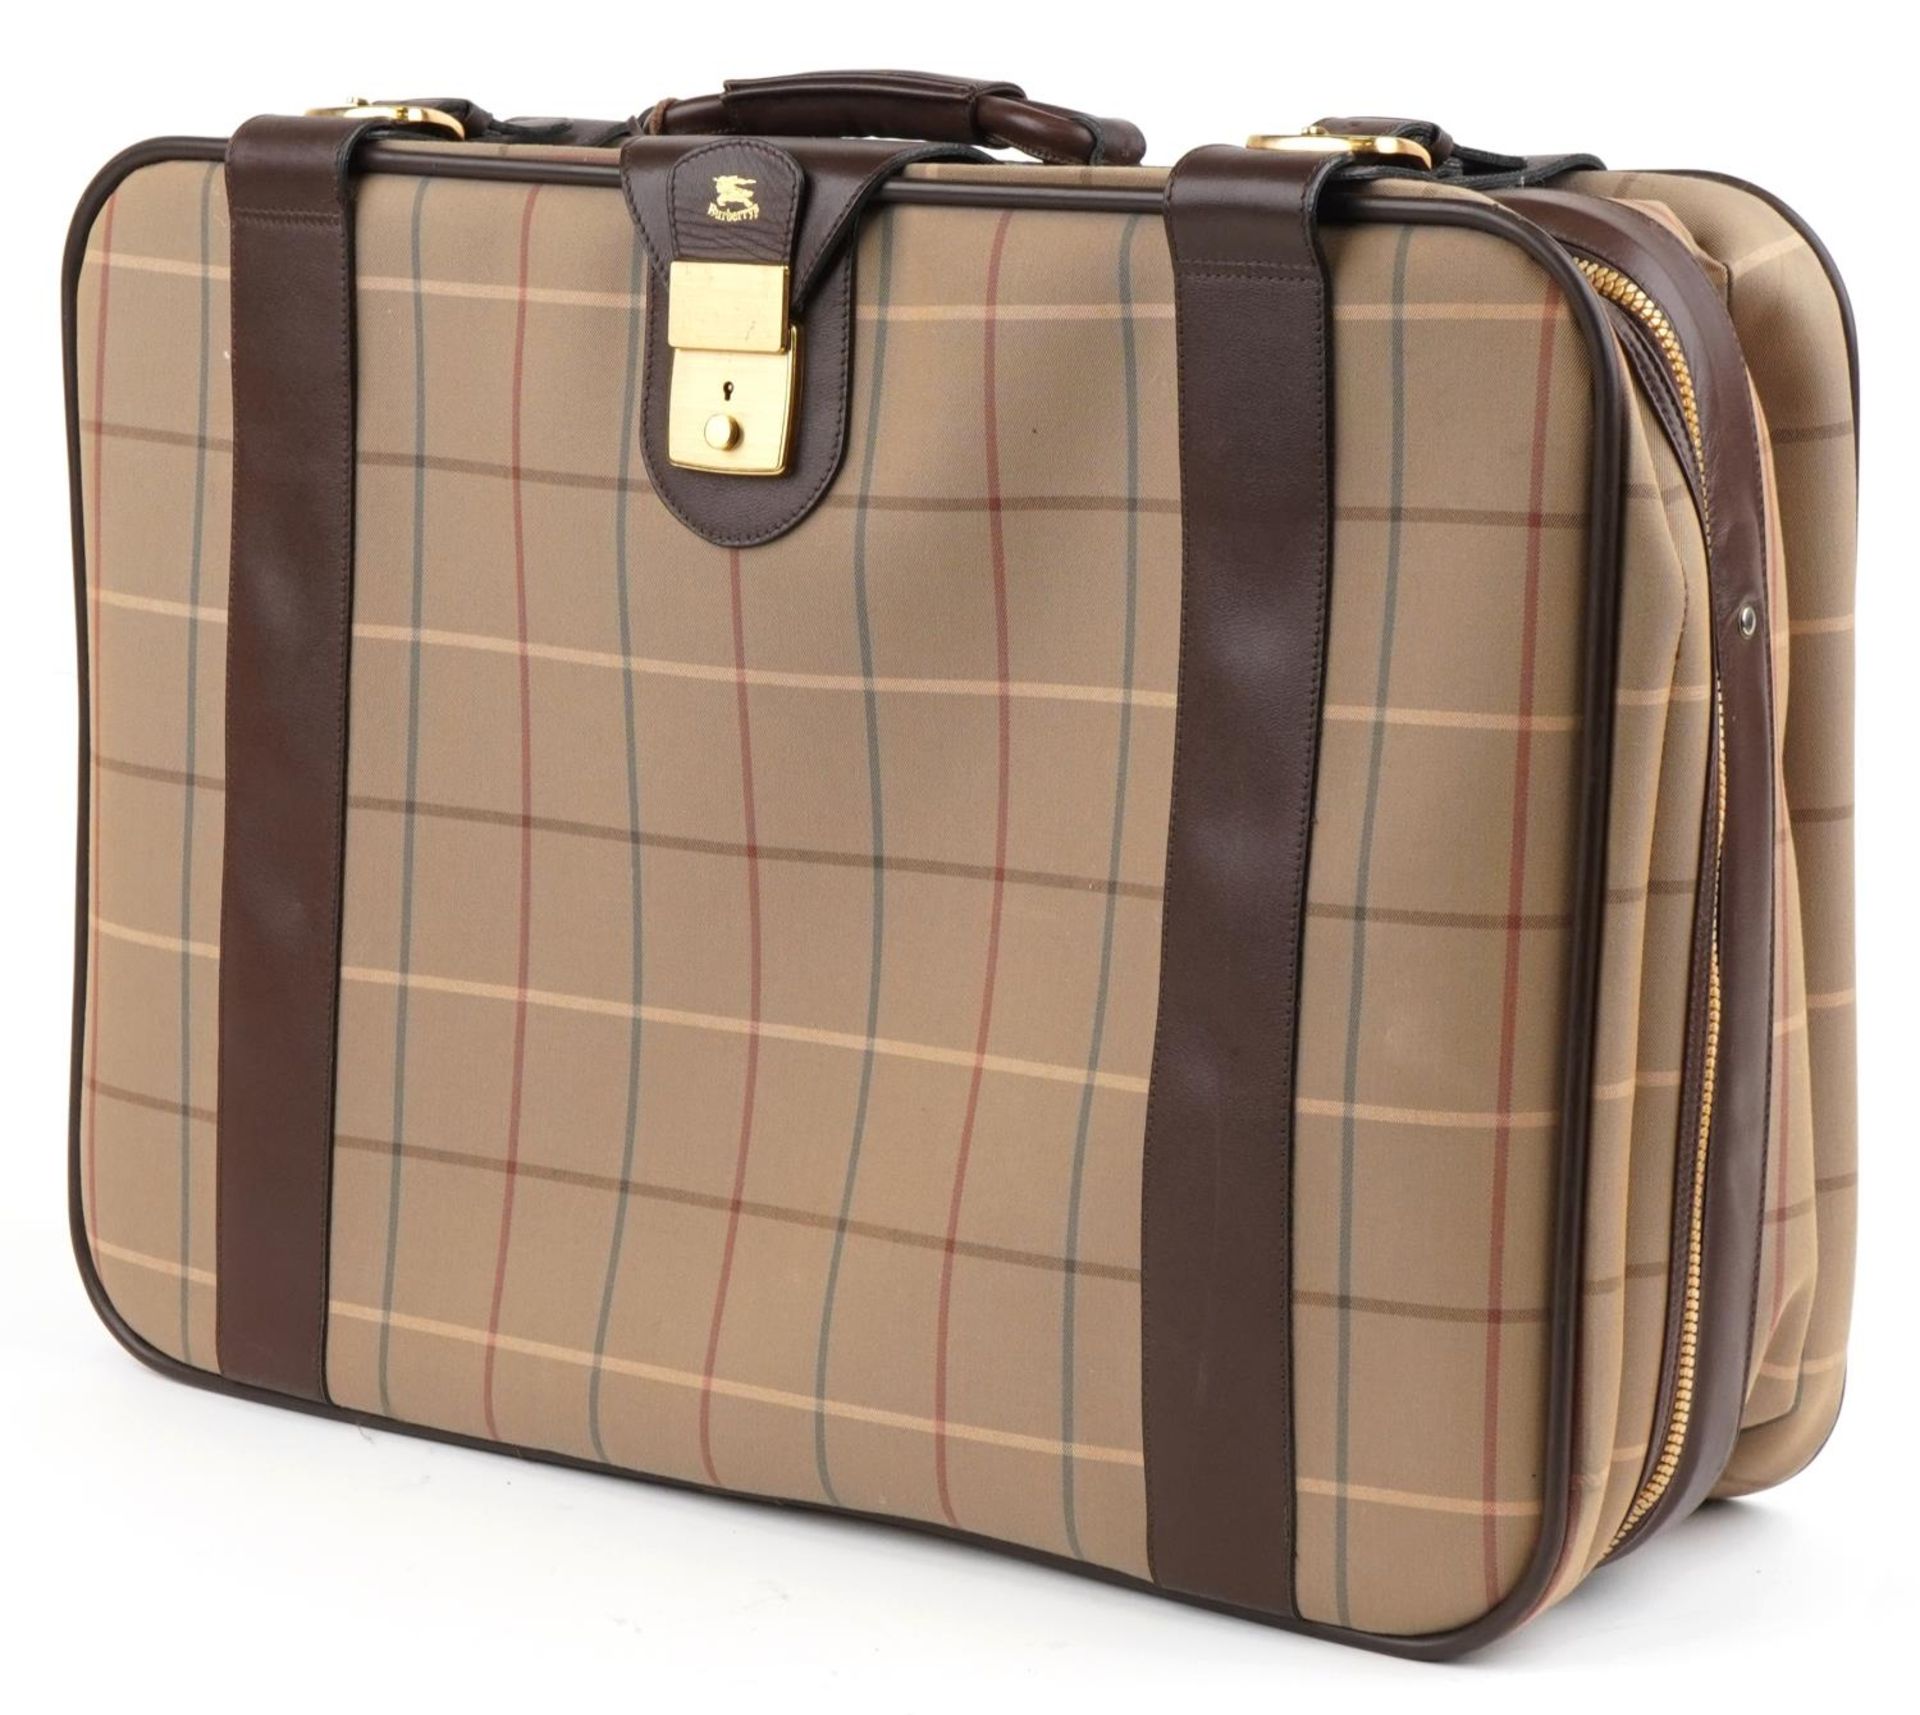 Vintage Burberry's Nova check suitcase, 43.5cm H x 61.5cm W x 19.5cm D : For further information